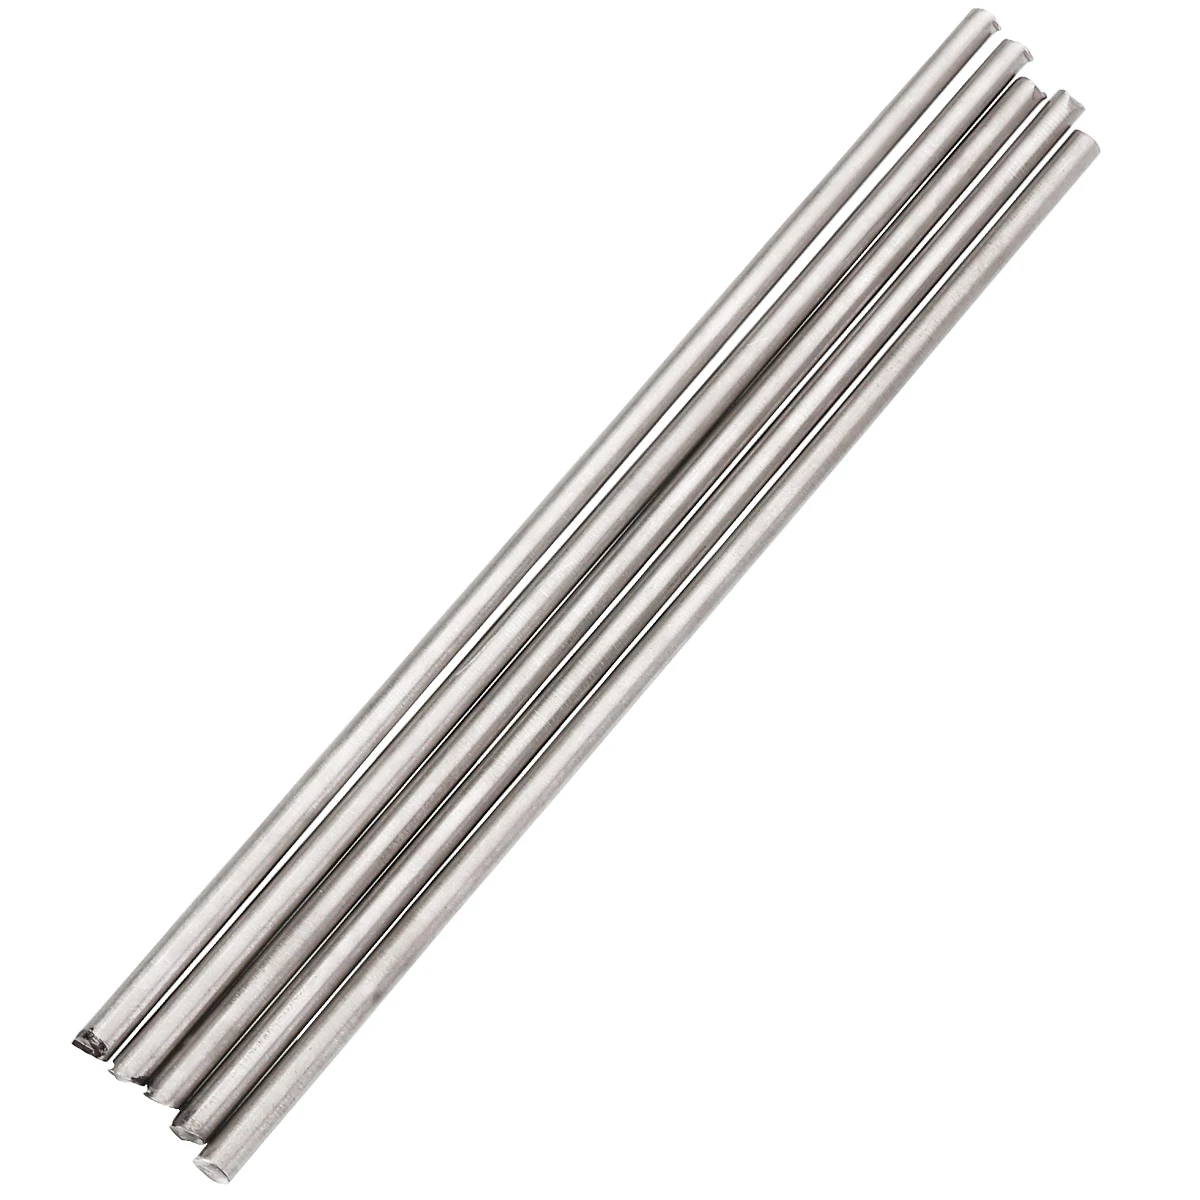 5 шт. серебро 4 мм Титан Ti Бар класс 5 GR5 металлический стержень 250 мм 10 дюймов Длина для промышленных инструментов